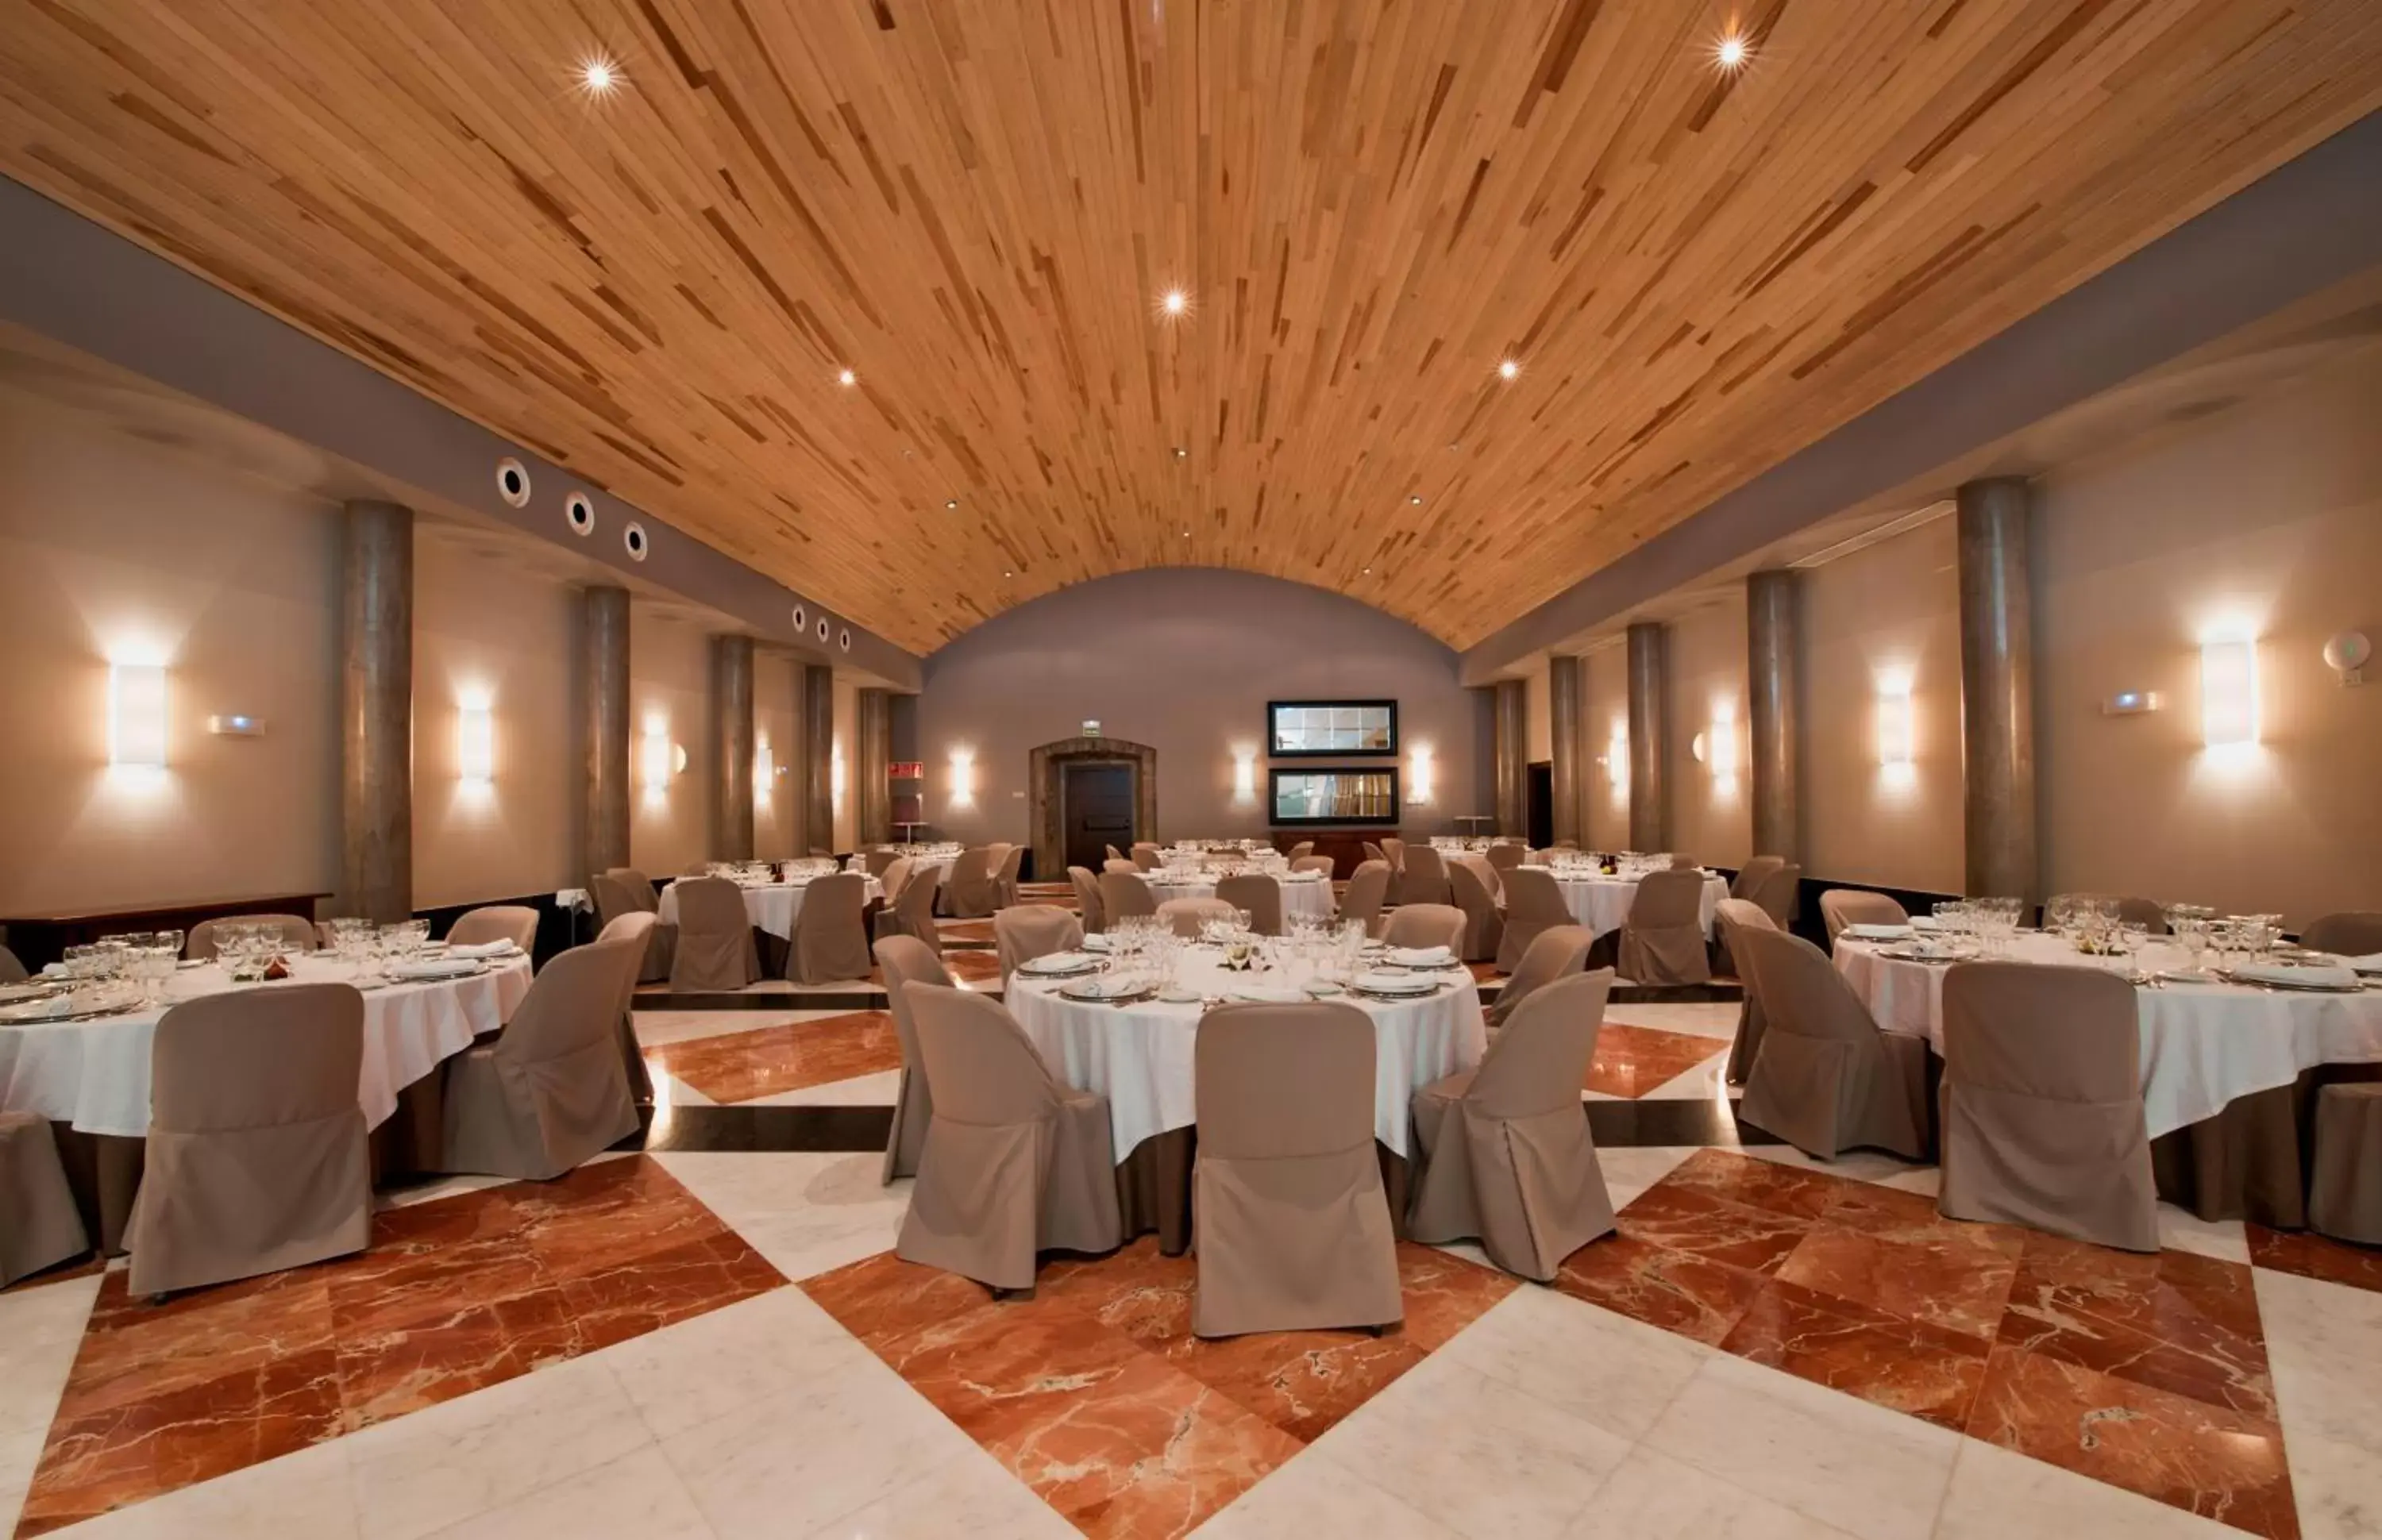 Banquet/Function facilities, Banquet Facilities in Parador de Corias